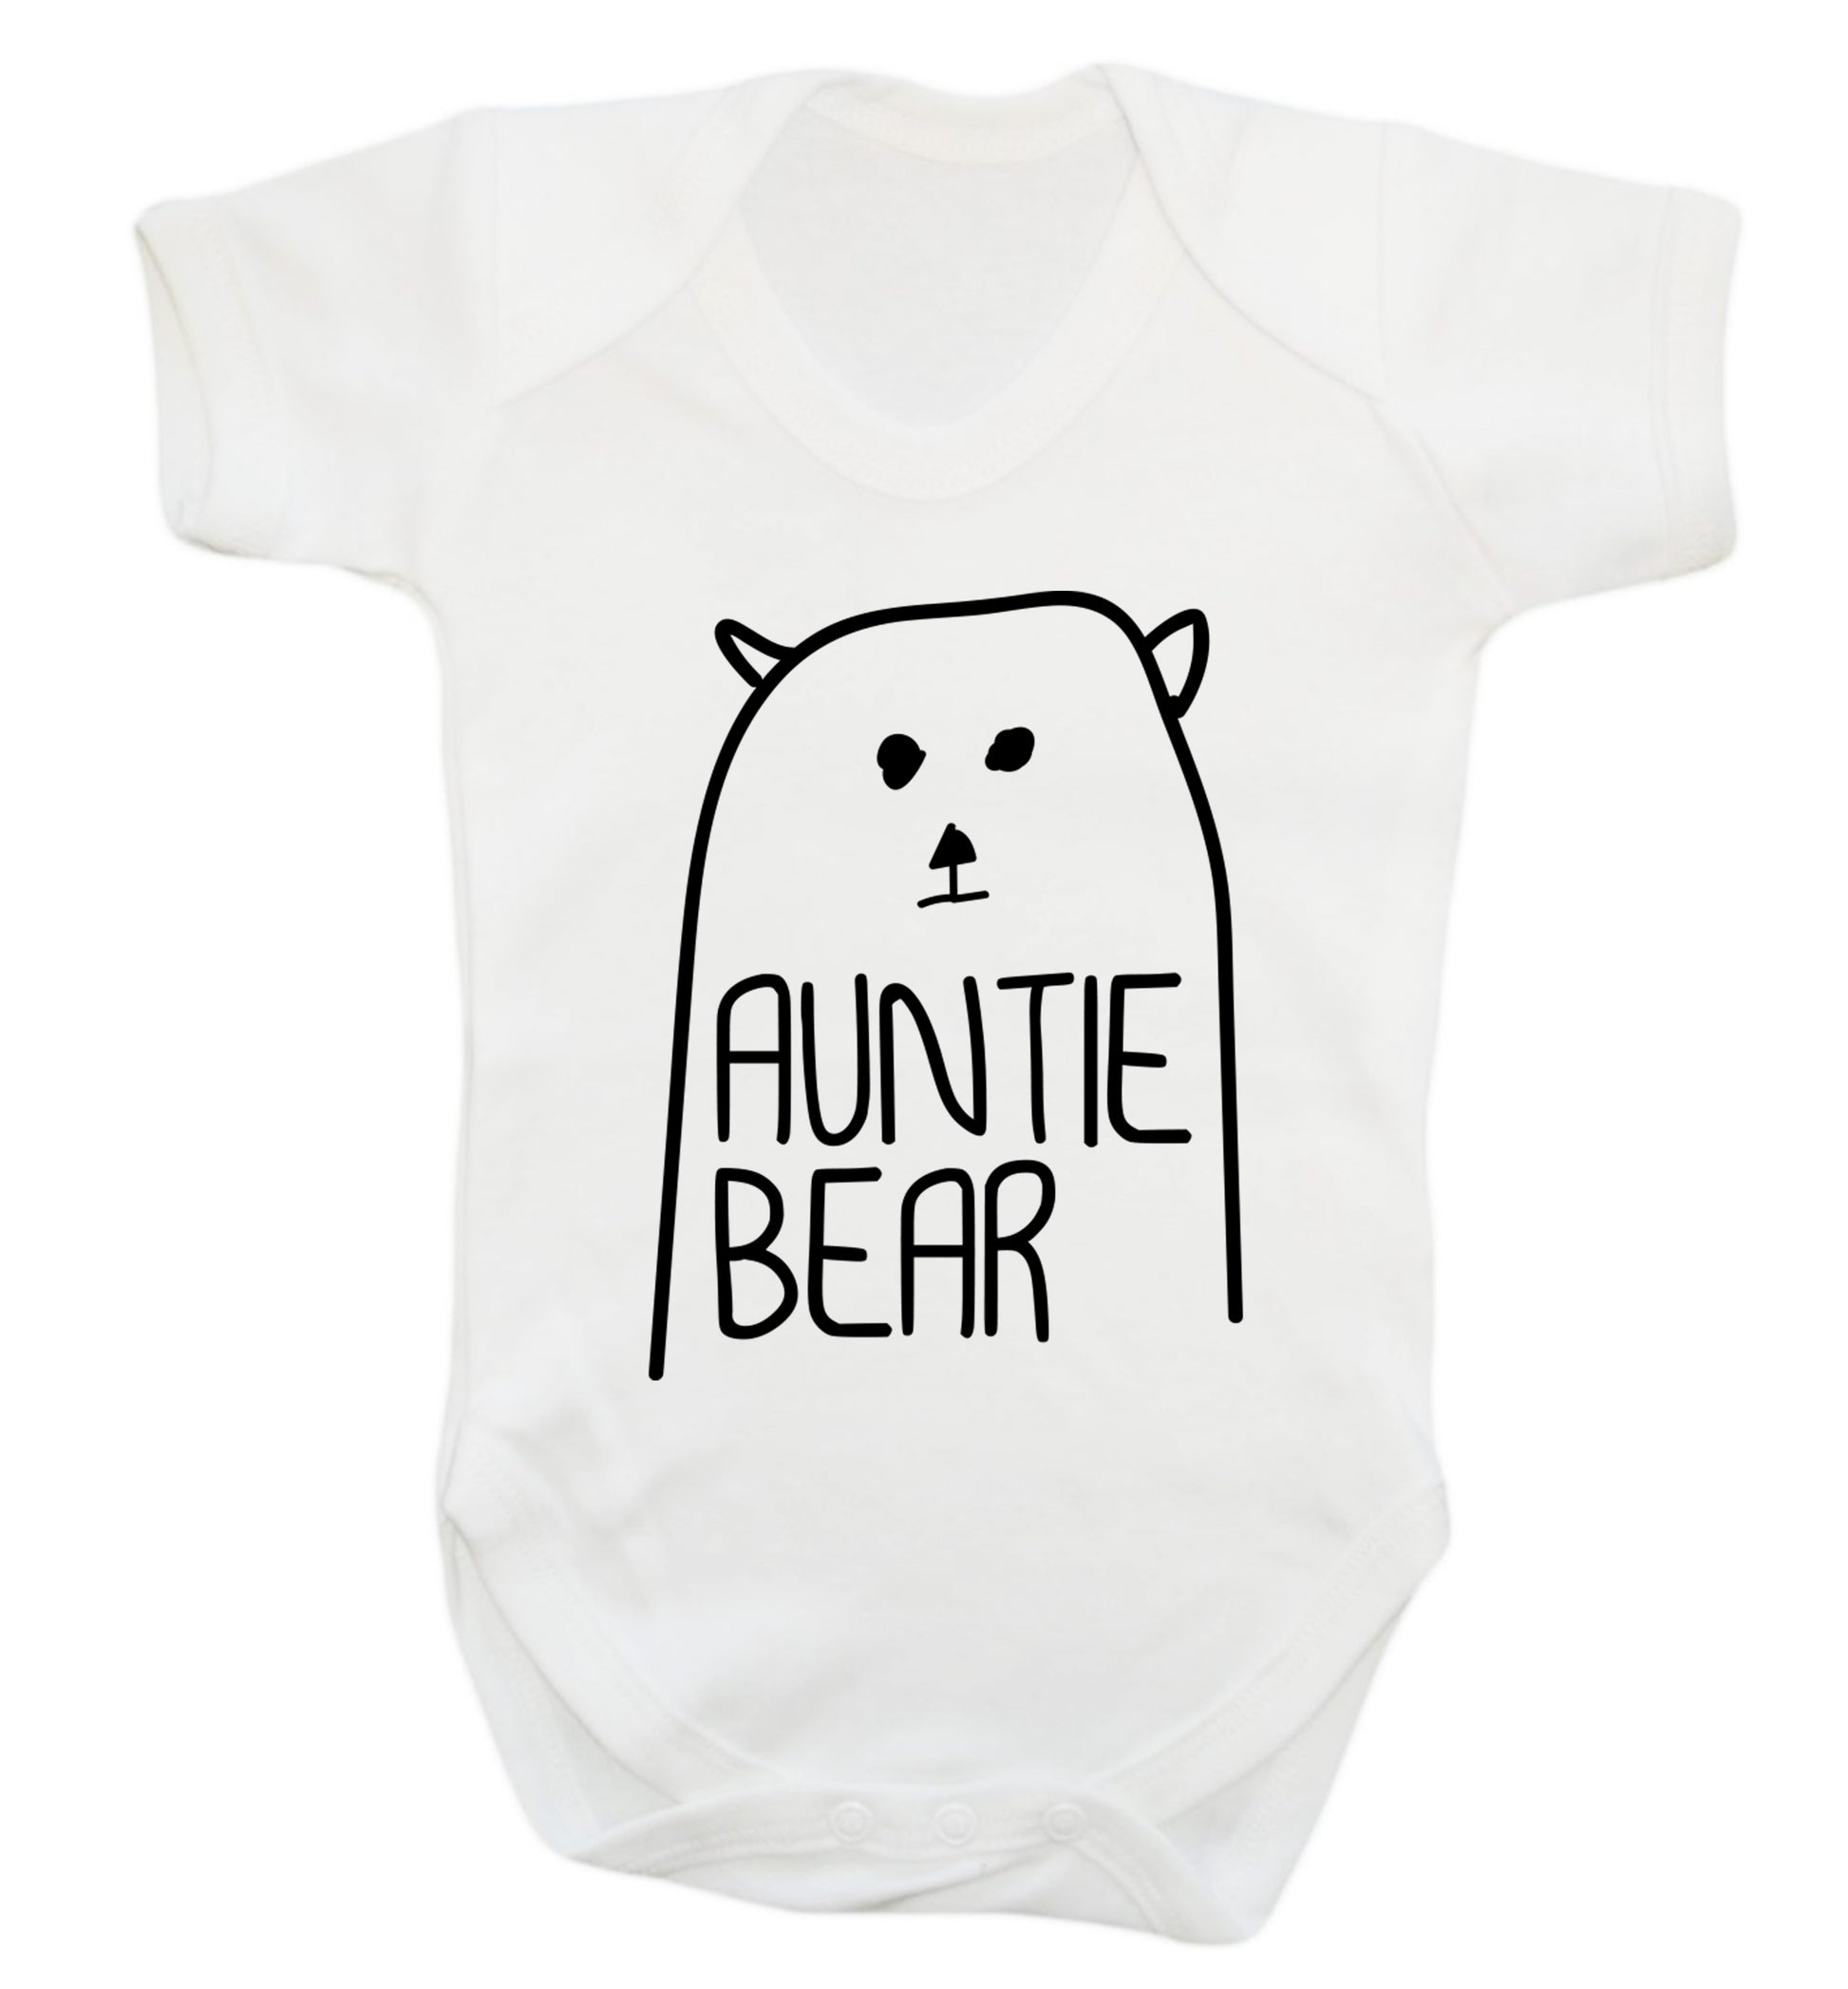 Auntie bear Baby Vest white 18-24 months